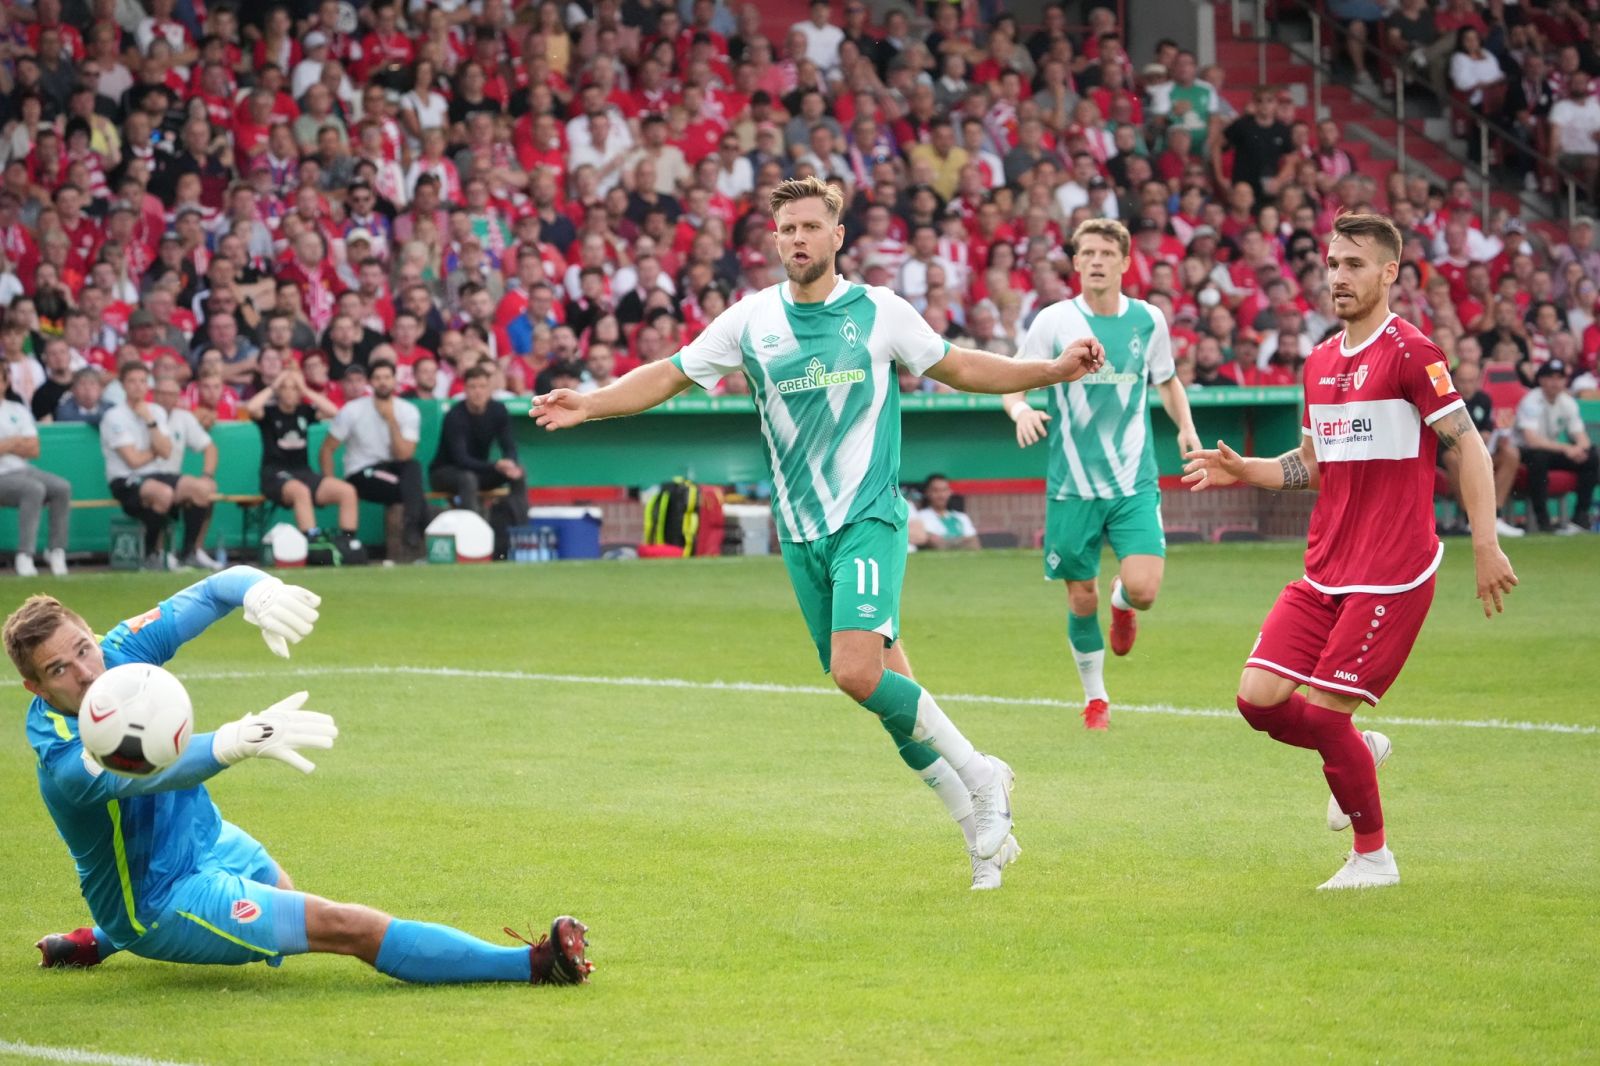 Nhận định, nhận định Wolfsburg vs Werder Bremen, 20h30 ngày 6/8 - Bundesliga